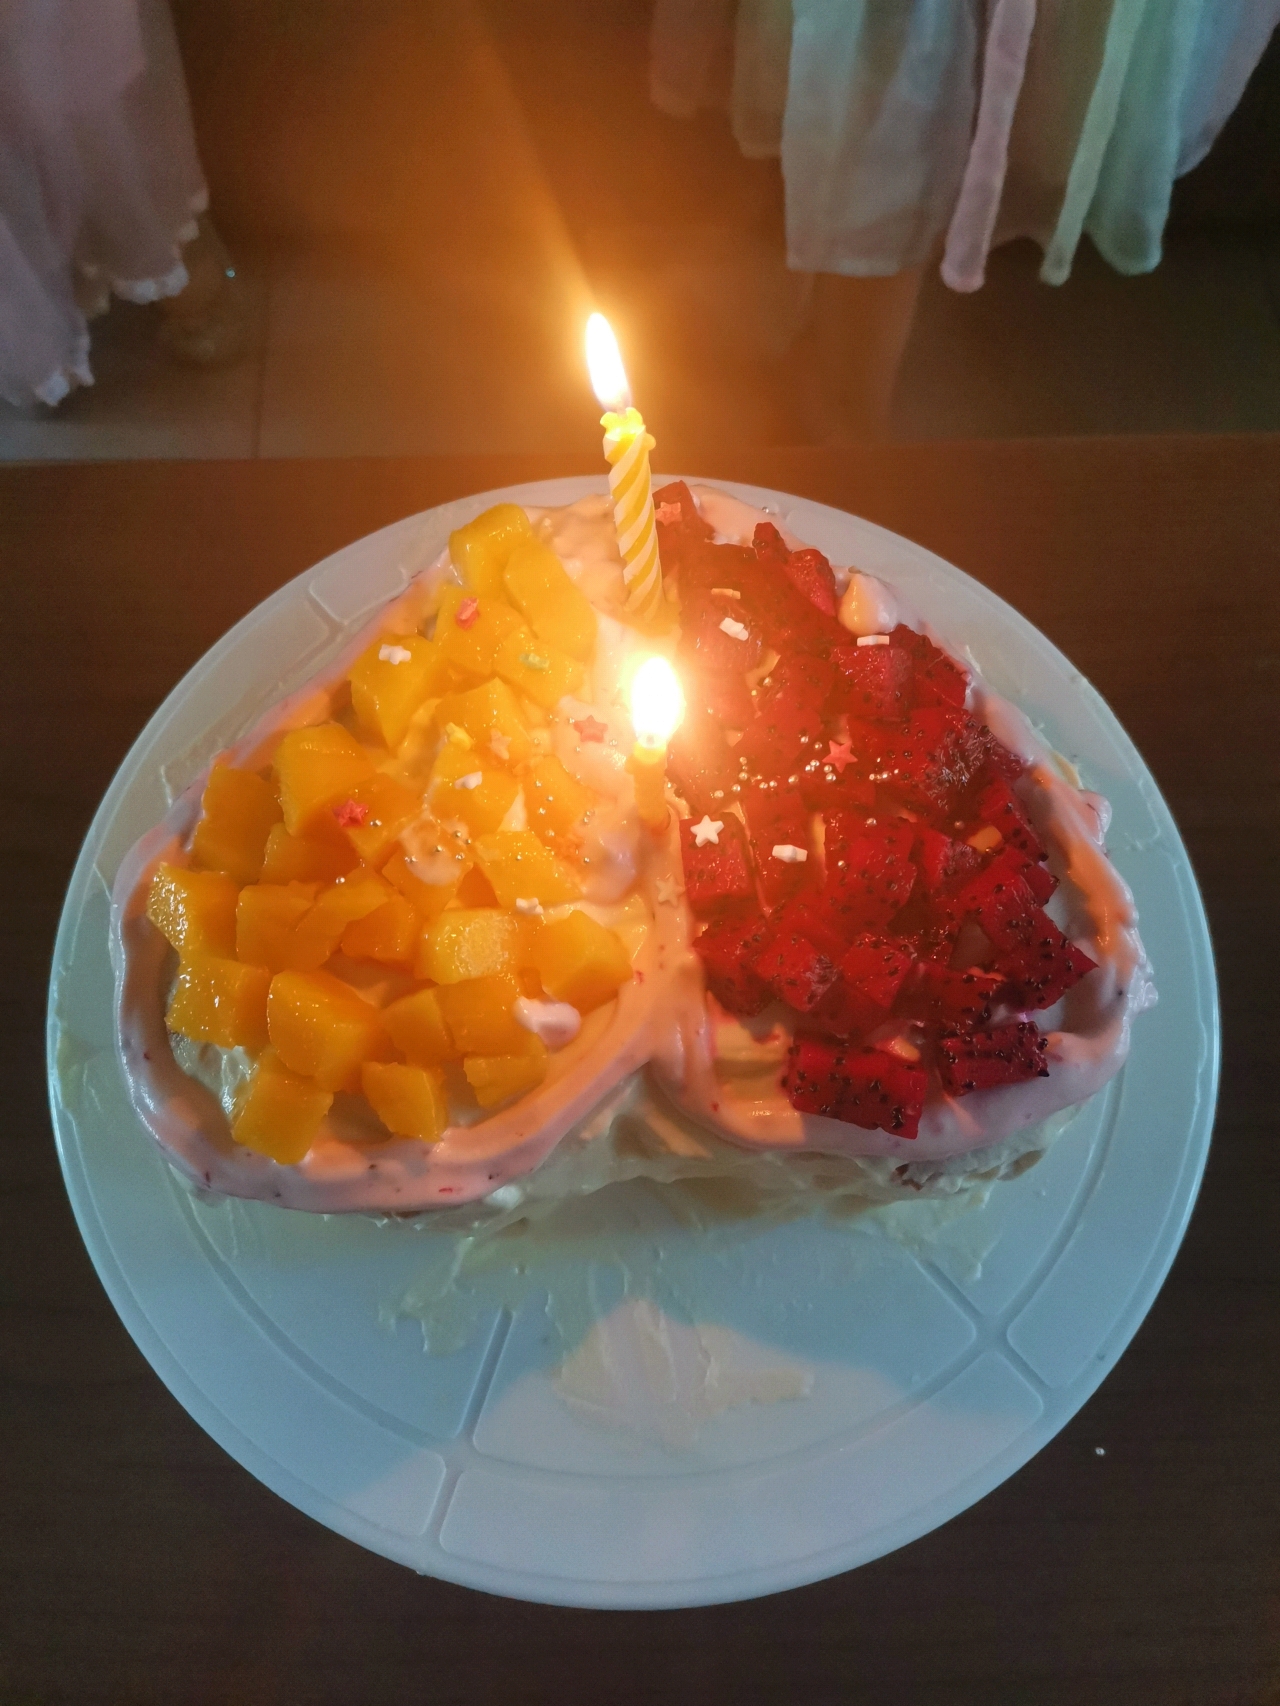 在家拍的生日蛋糕图片图片